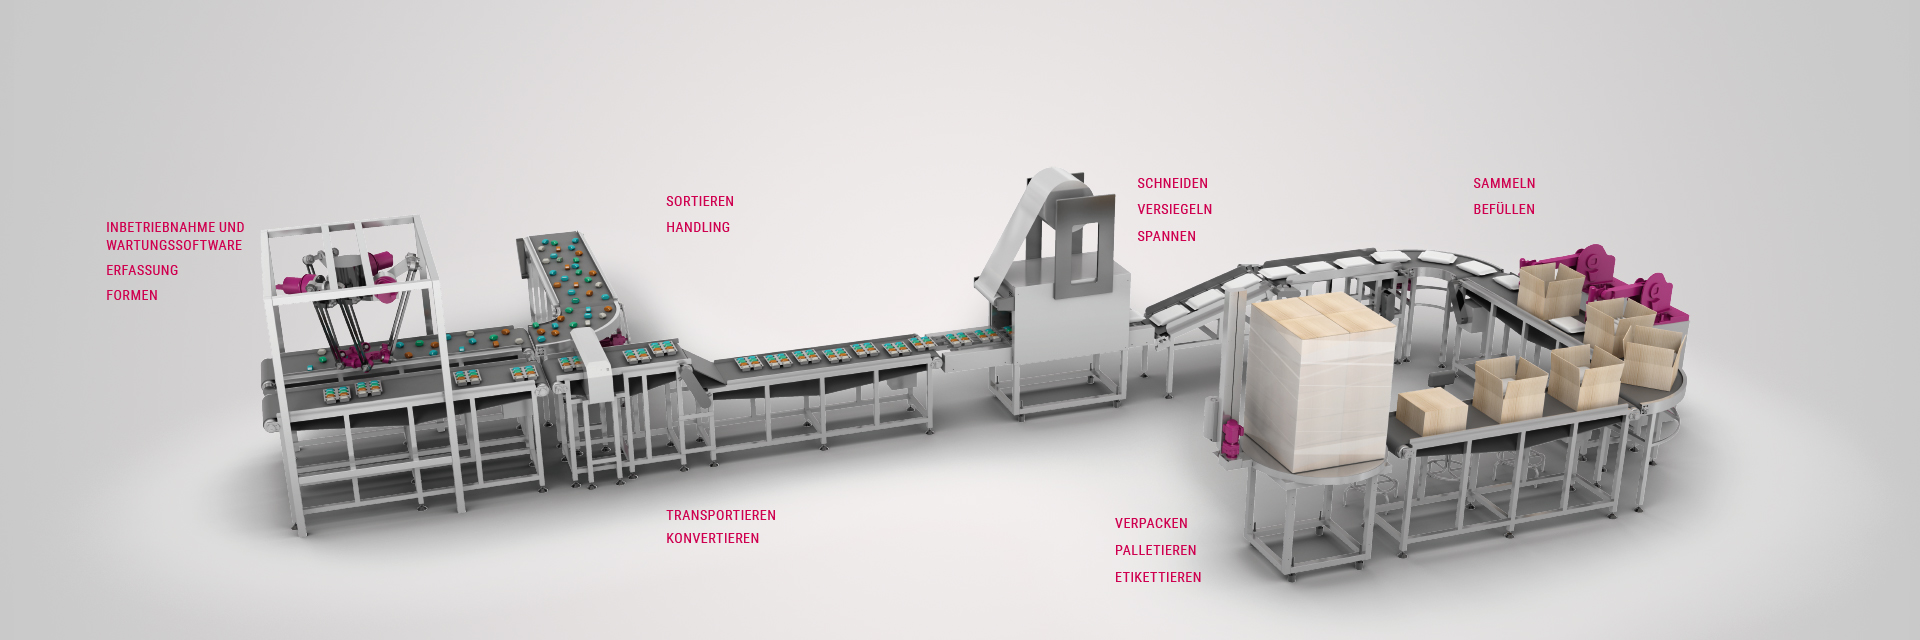 Illustration verschiedener Prozesse in einer Verpackungs- und Lebensmittelmaschine